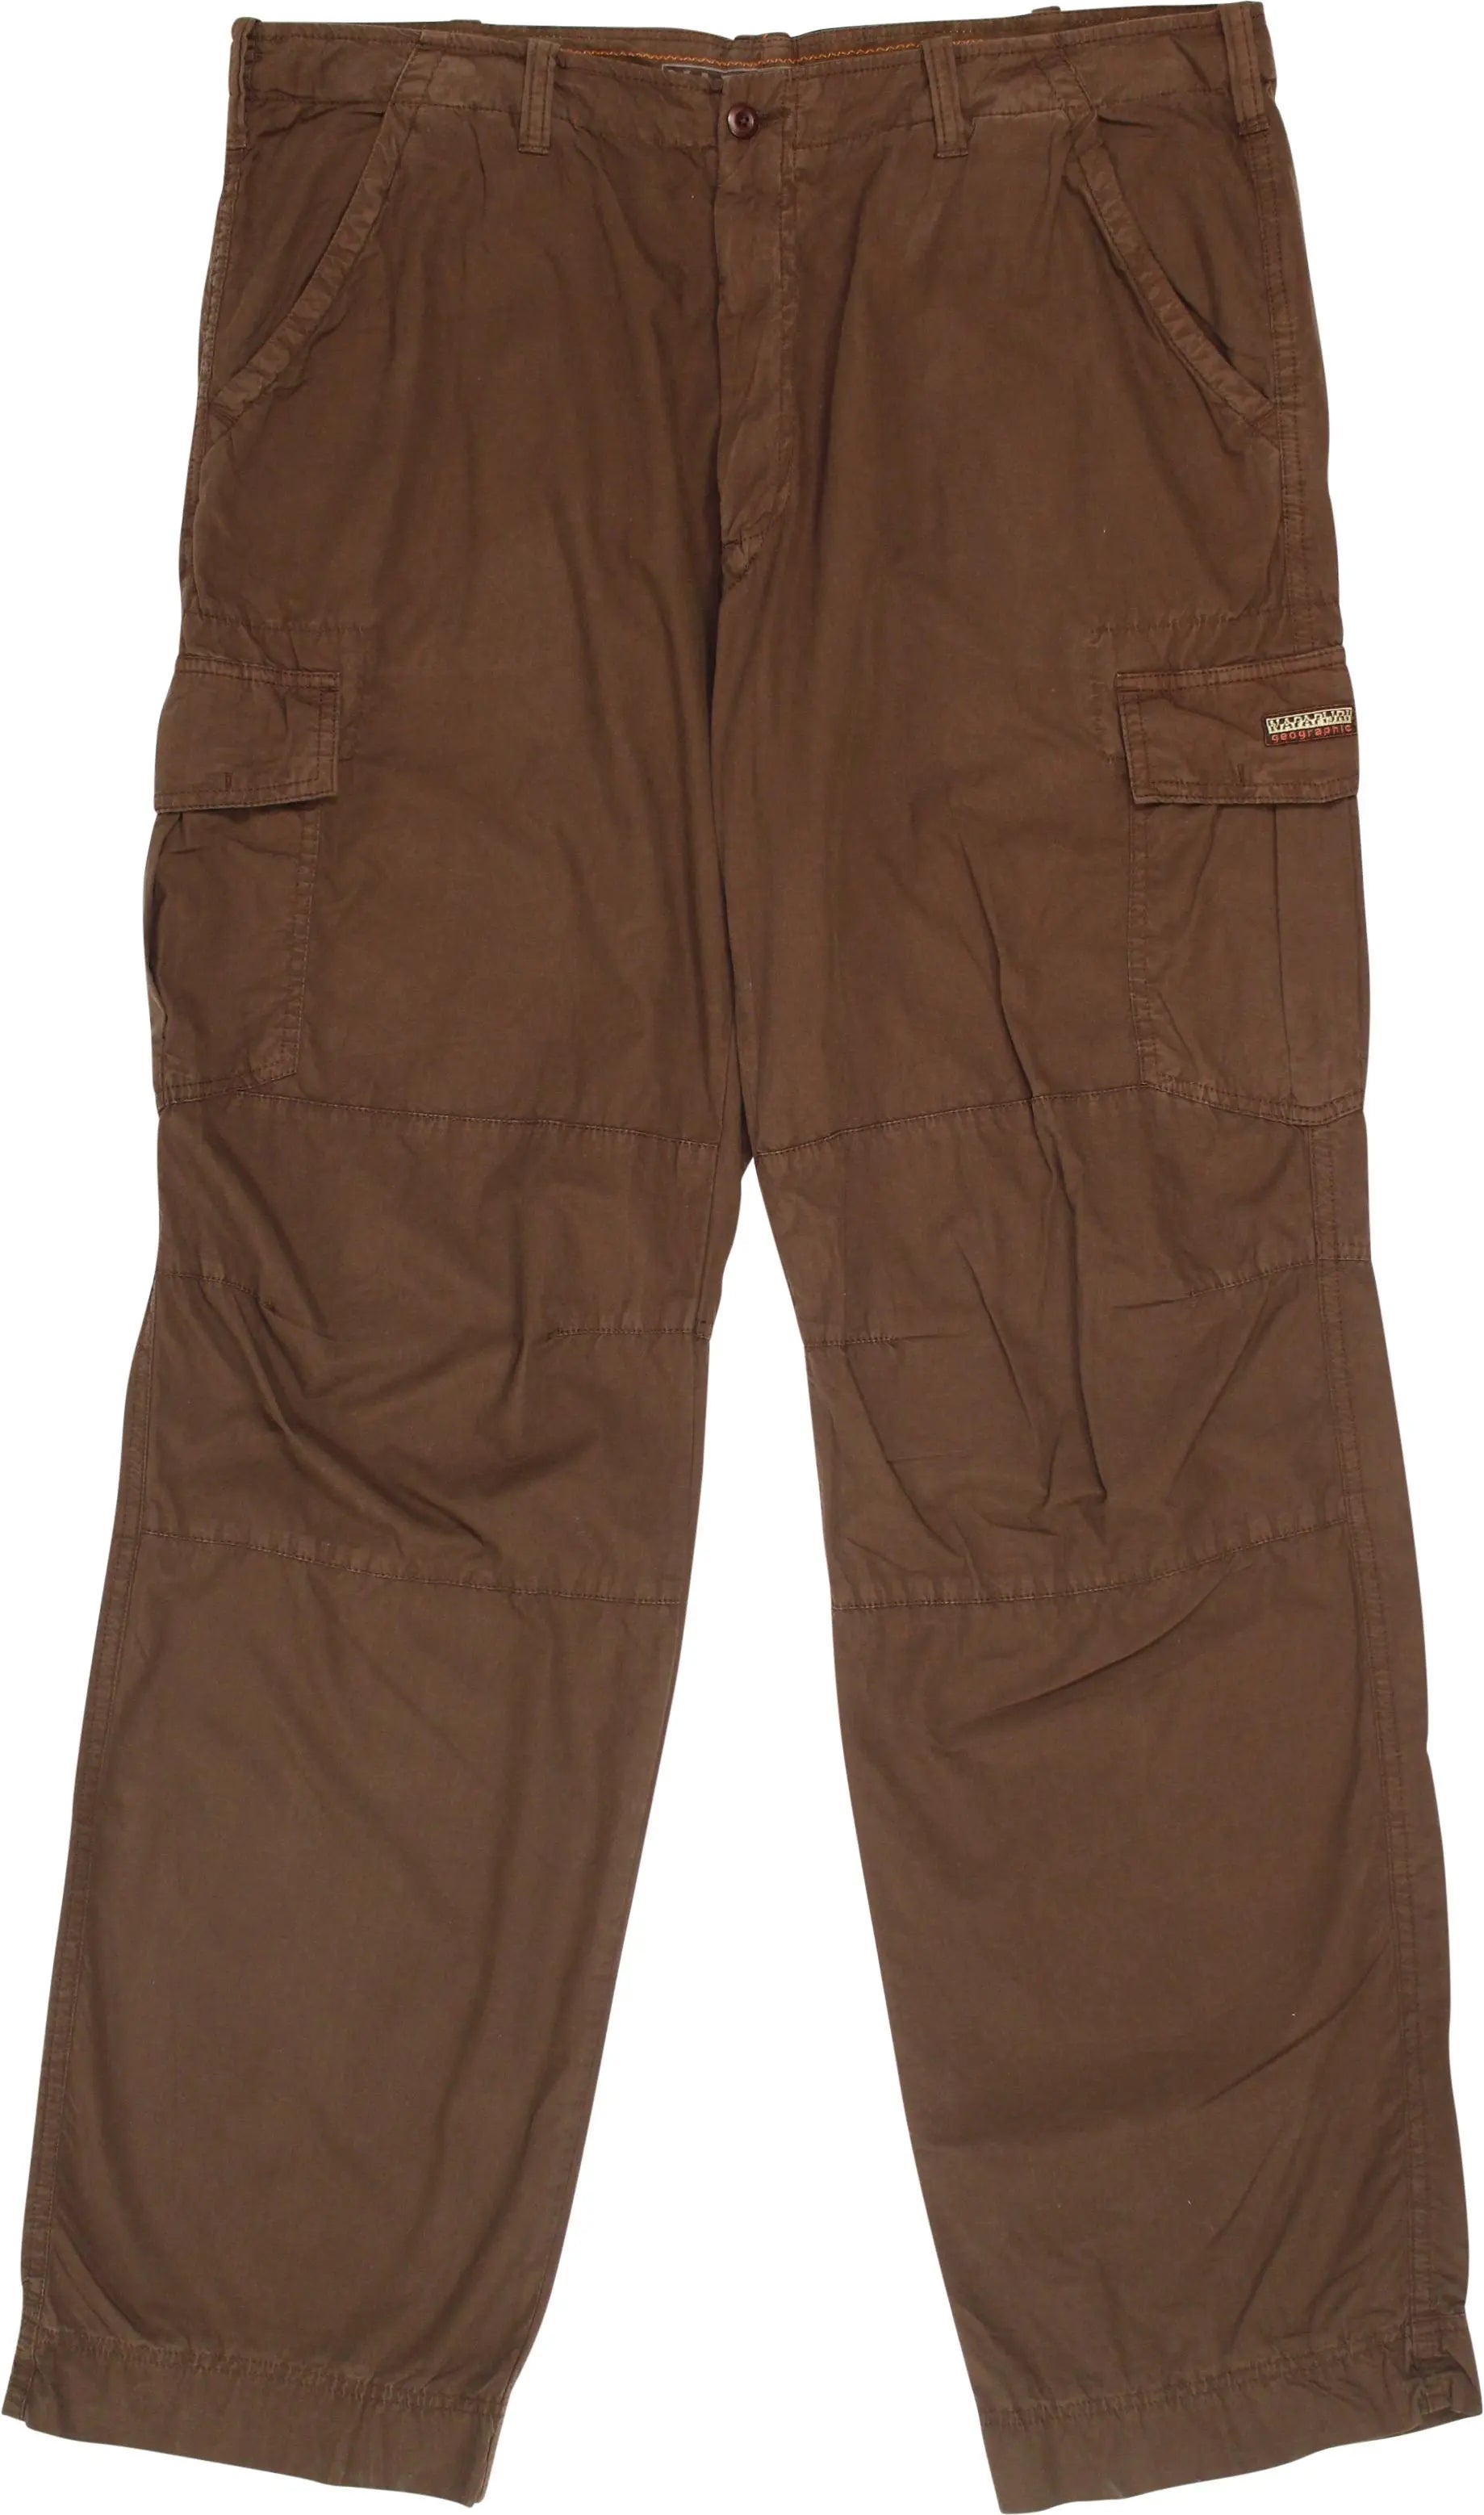 Napapijri - Brown Napapijri trousers- ThriftTale.com - Vintage and second handclothing